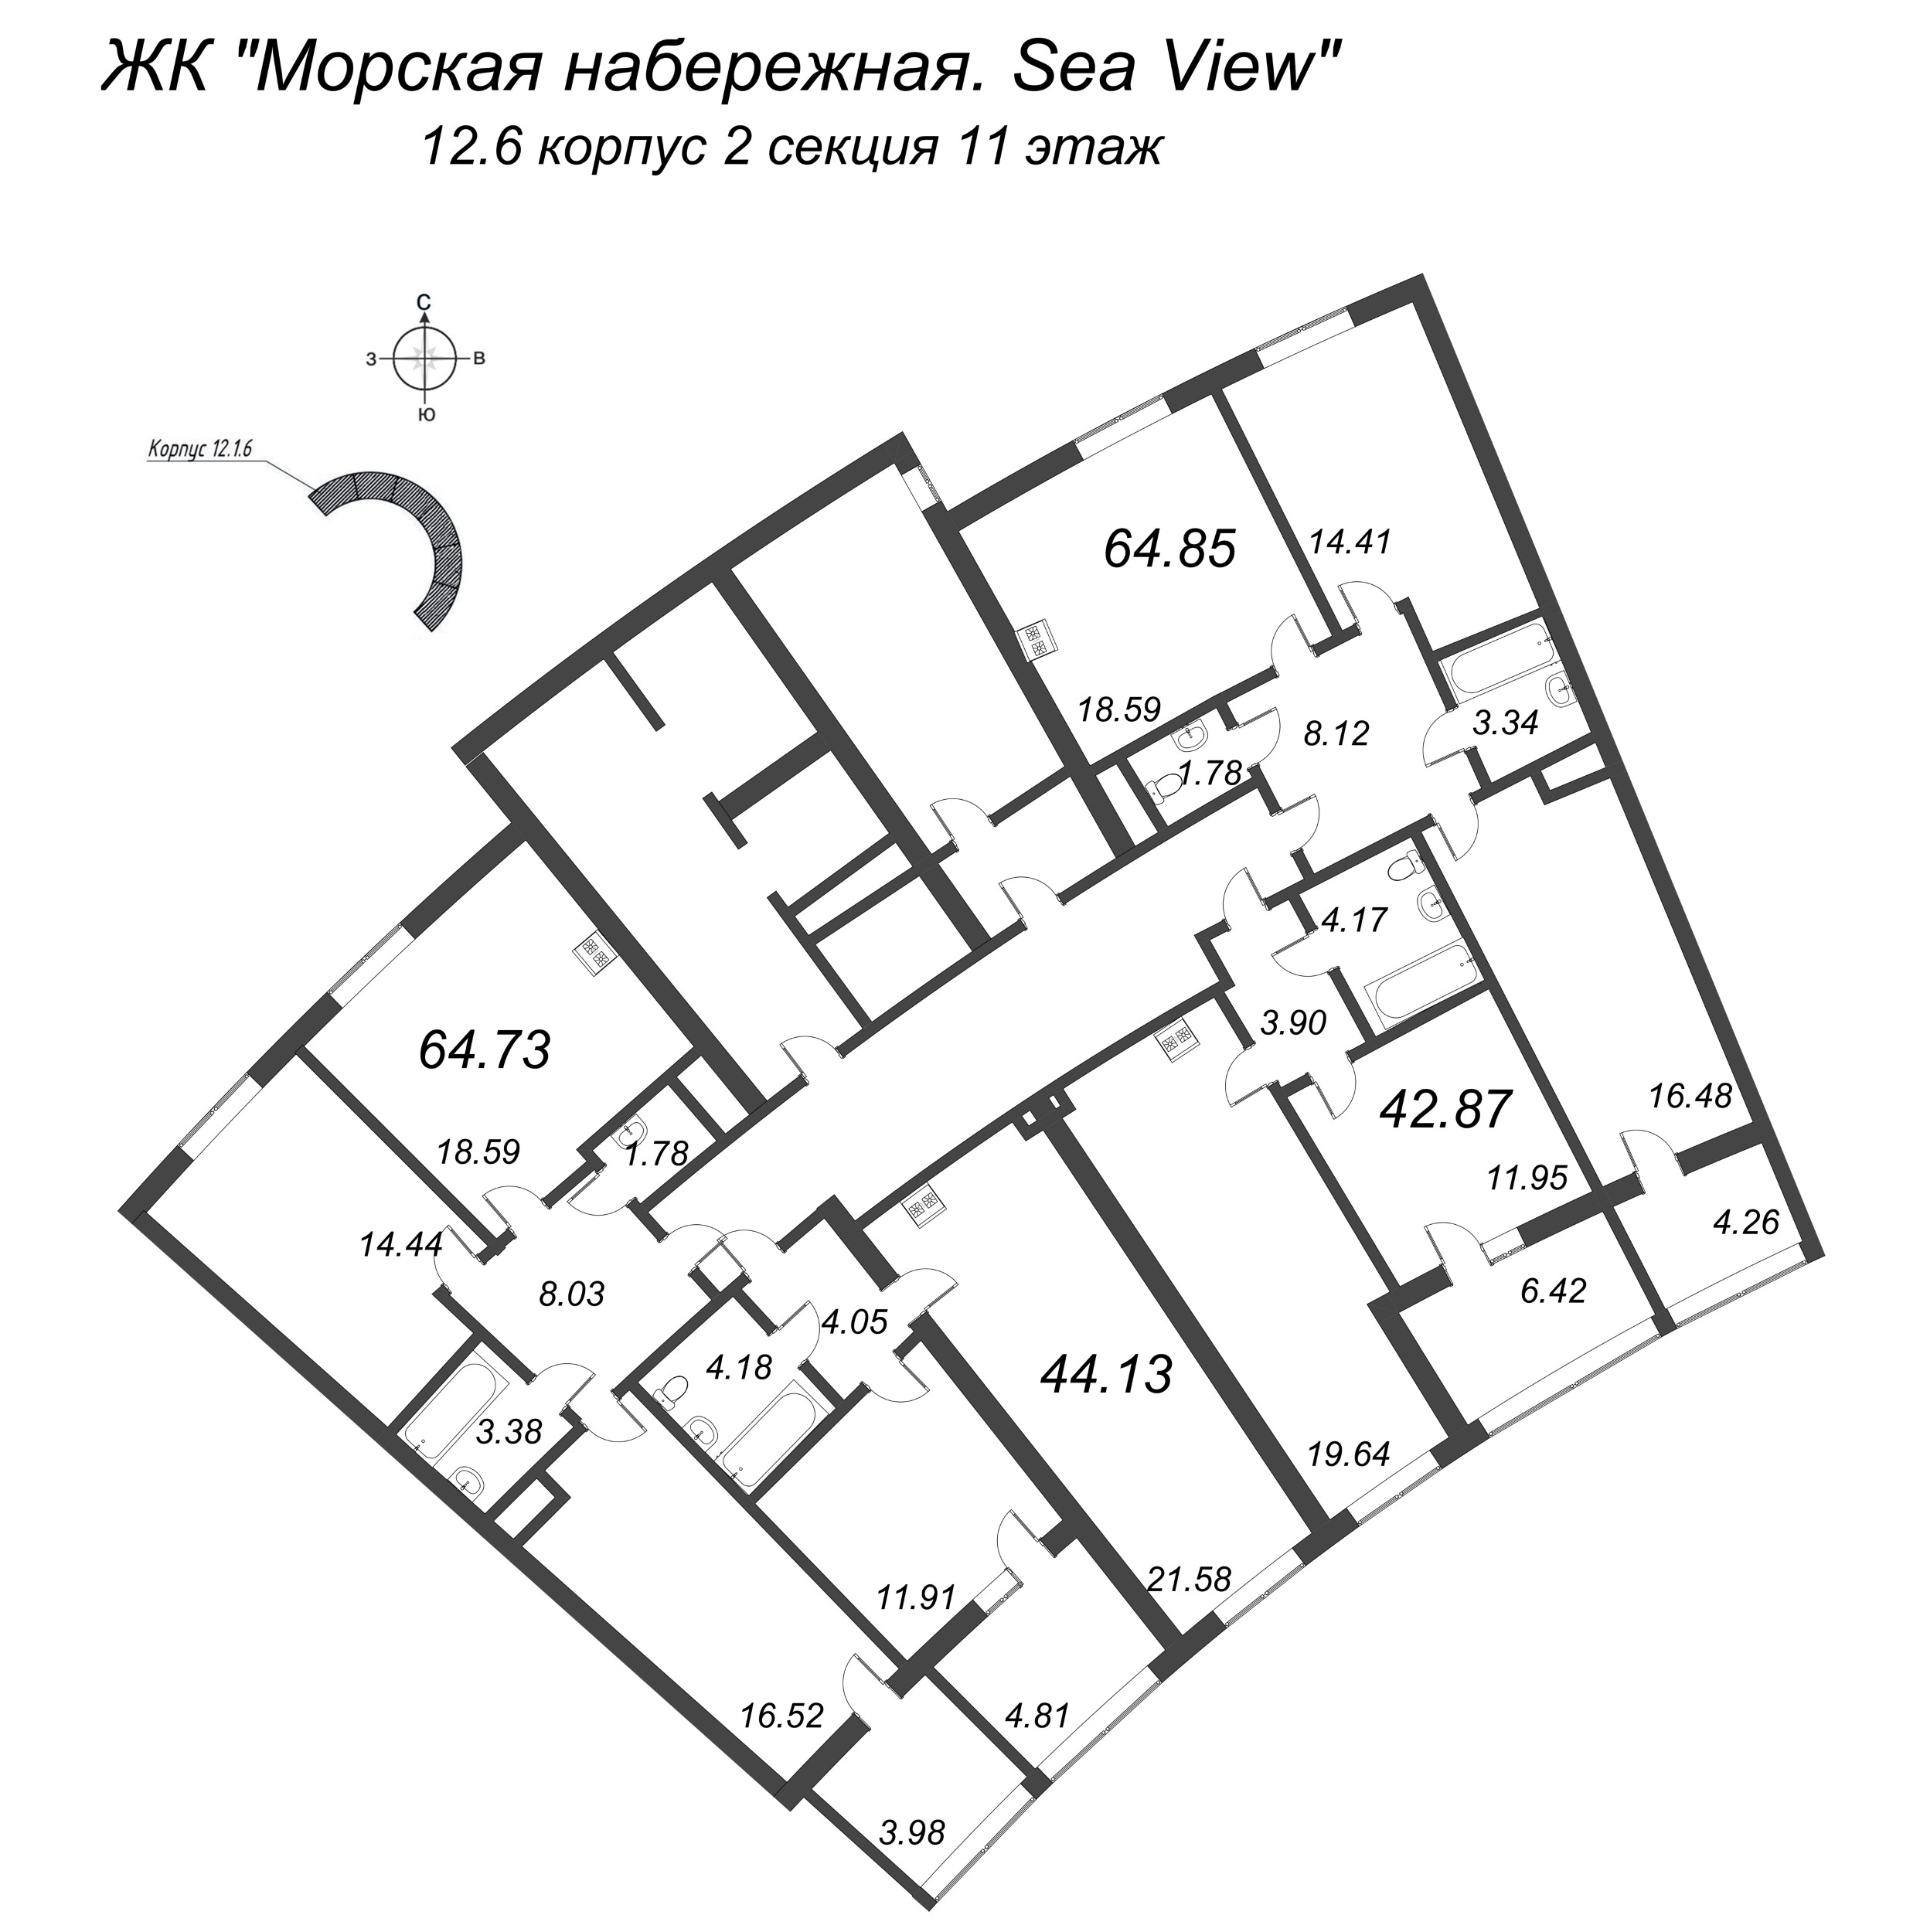 3-комнатная (Евро) квартира, 64.85 м² в ЖК "Морская набережная. SeaView" - планировка этажа